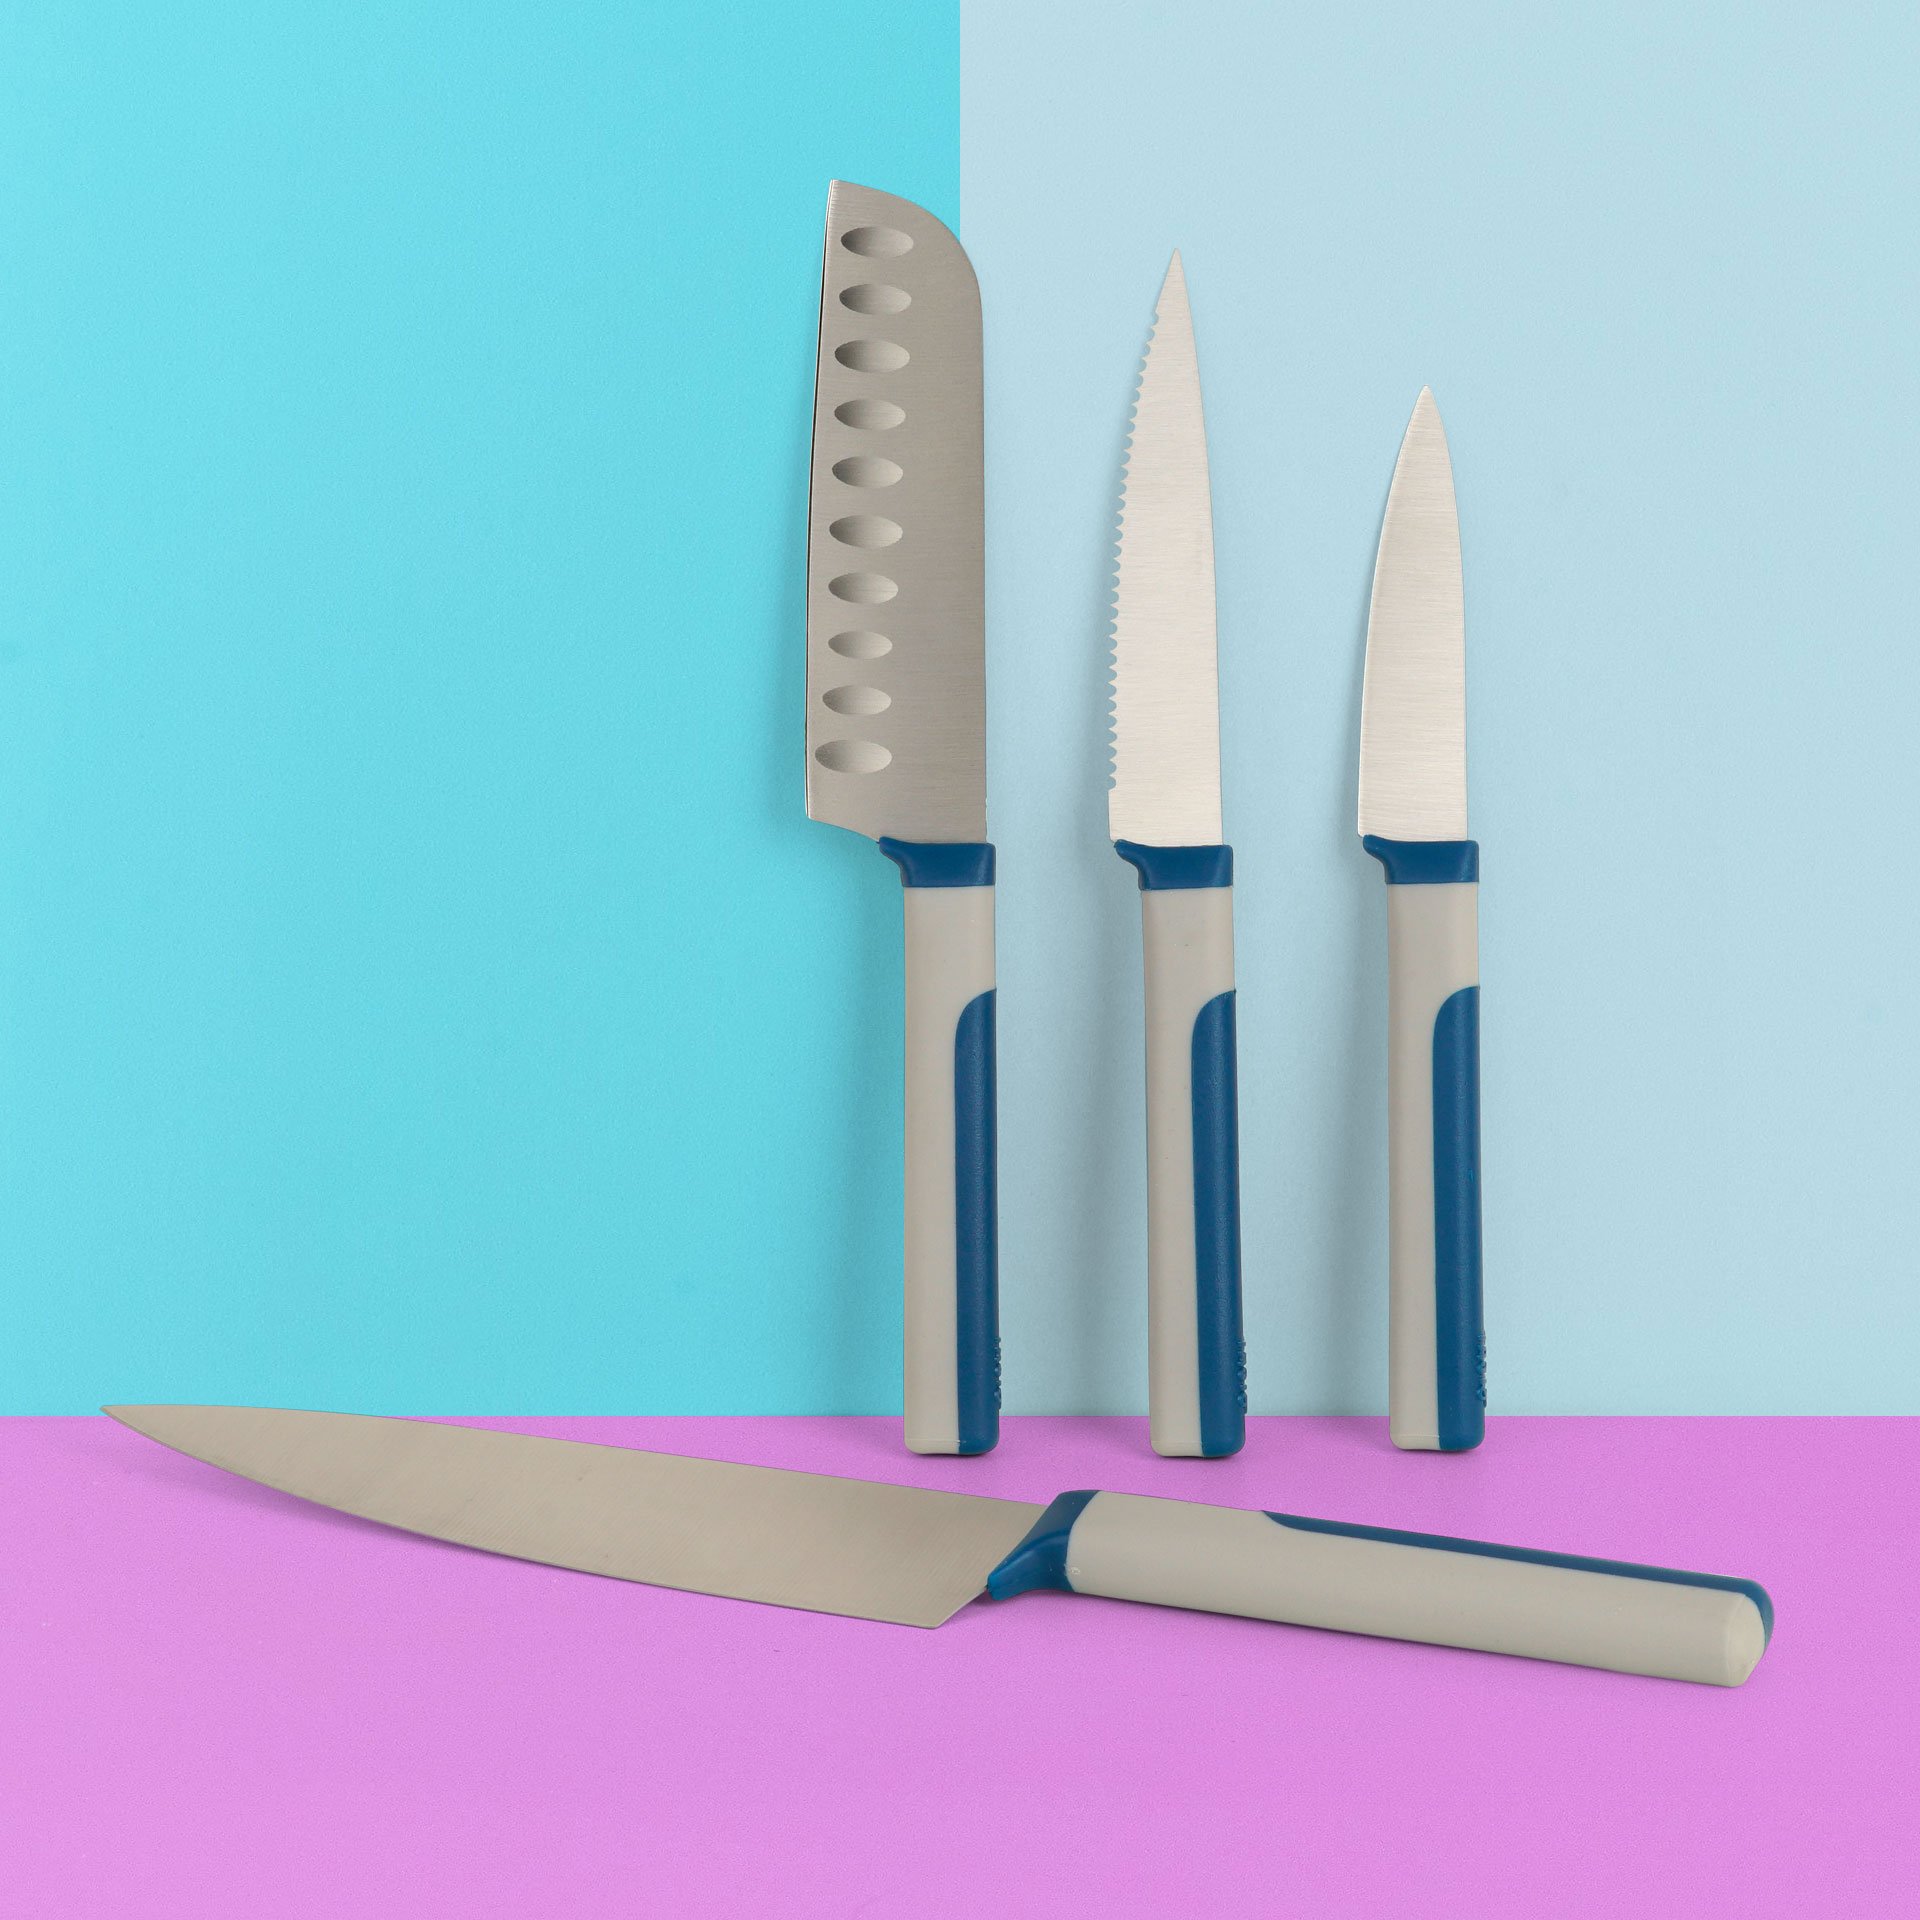 Juego de Cuchillos de Cocina Tasty en Azul, 4 Piezas – Cuchillo Patatero, Cuchillo de Sierra, Cuchillo Santoku y Cuchillo de Chef para una Variedad de Usos